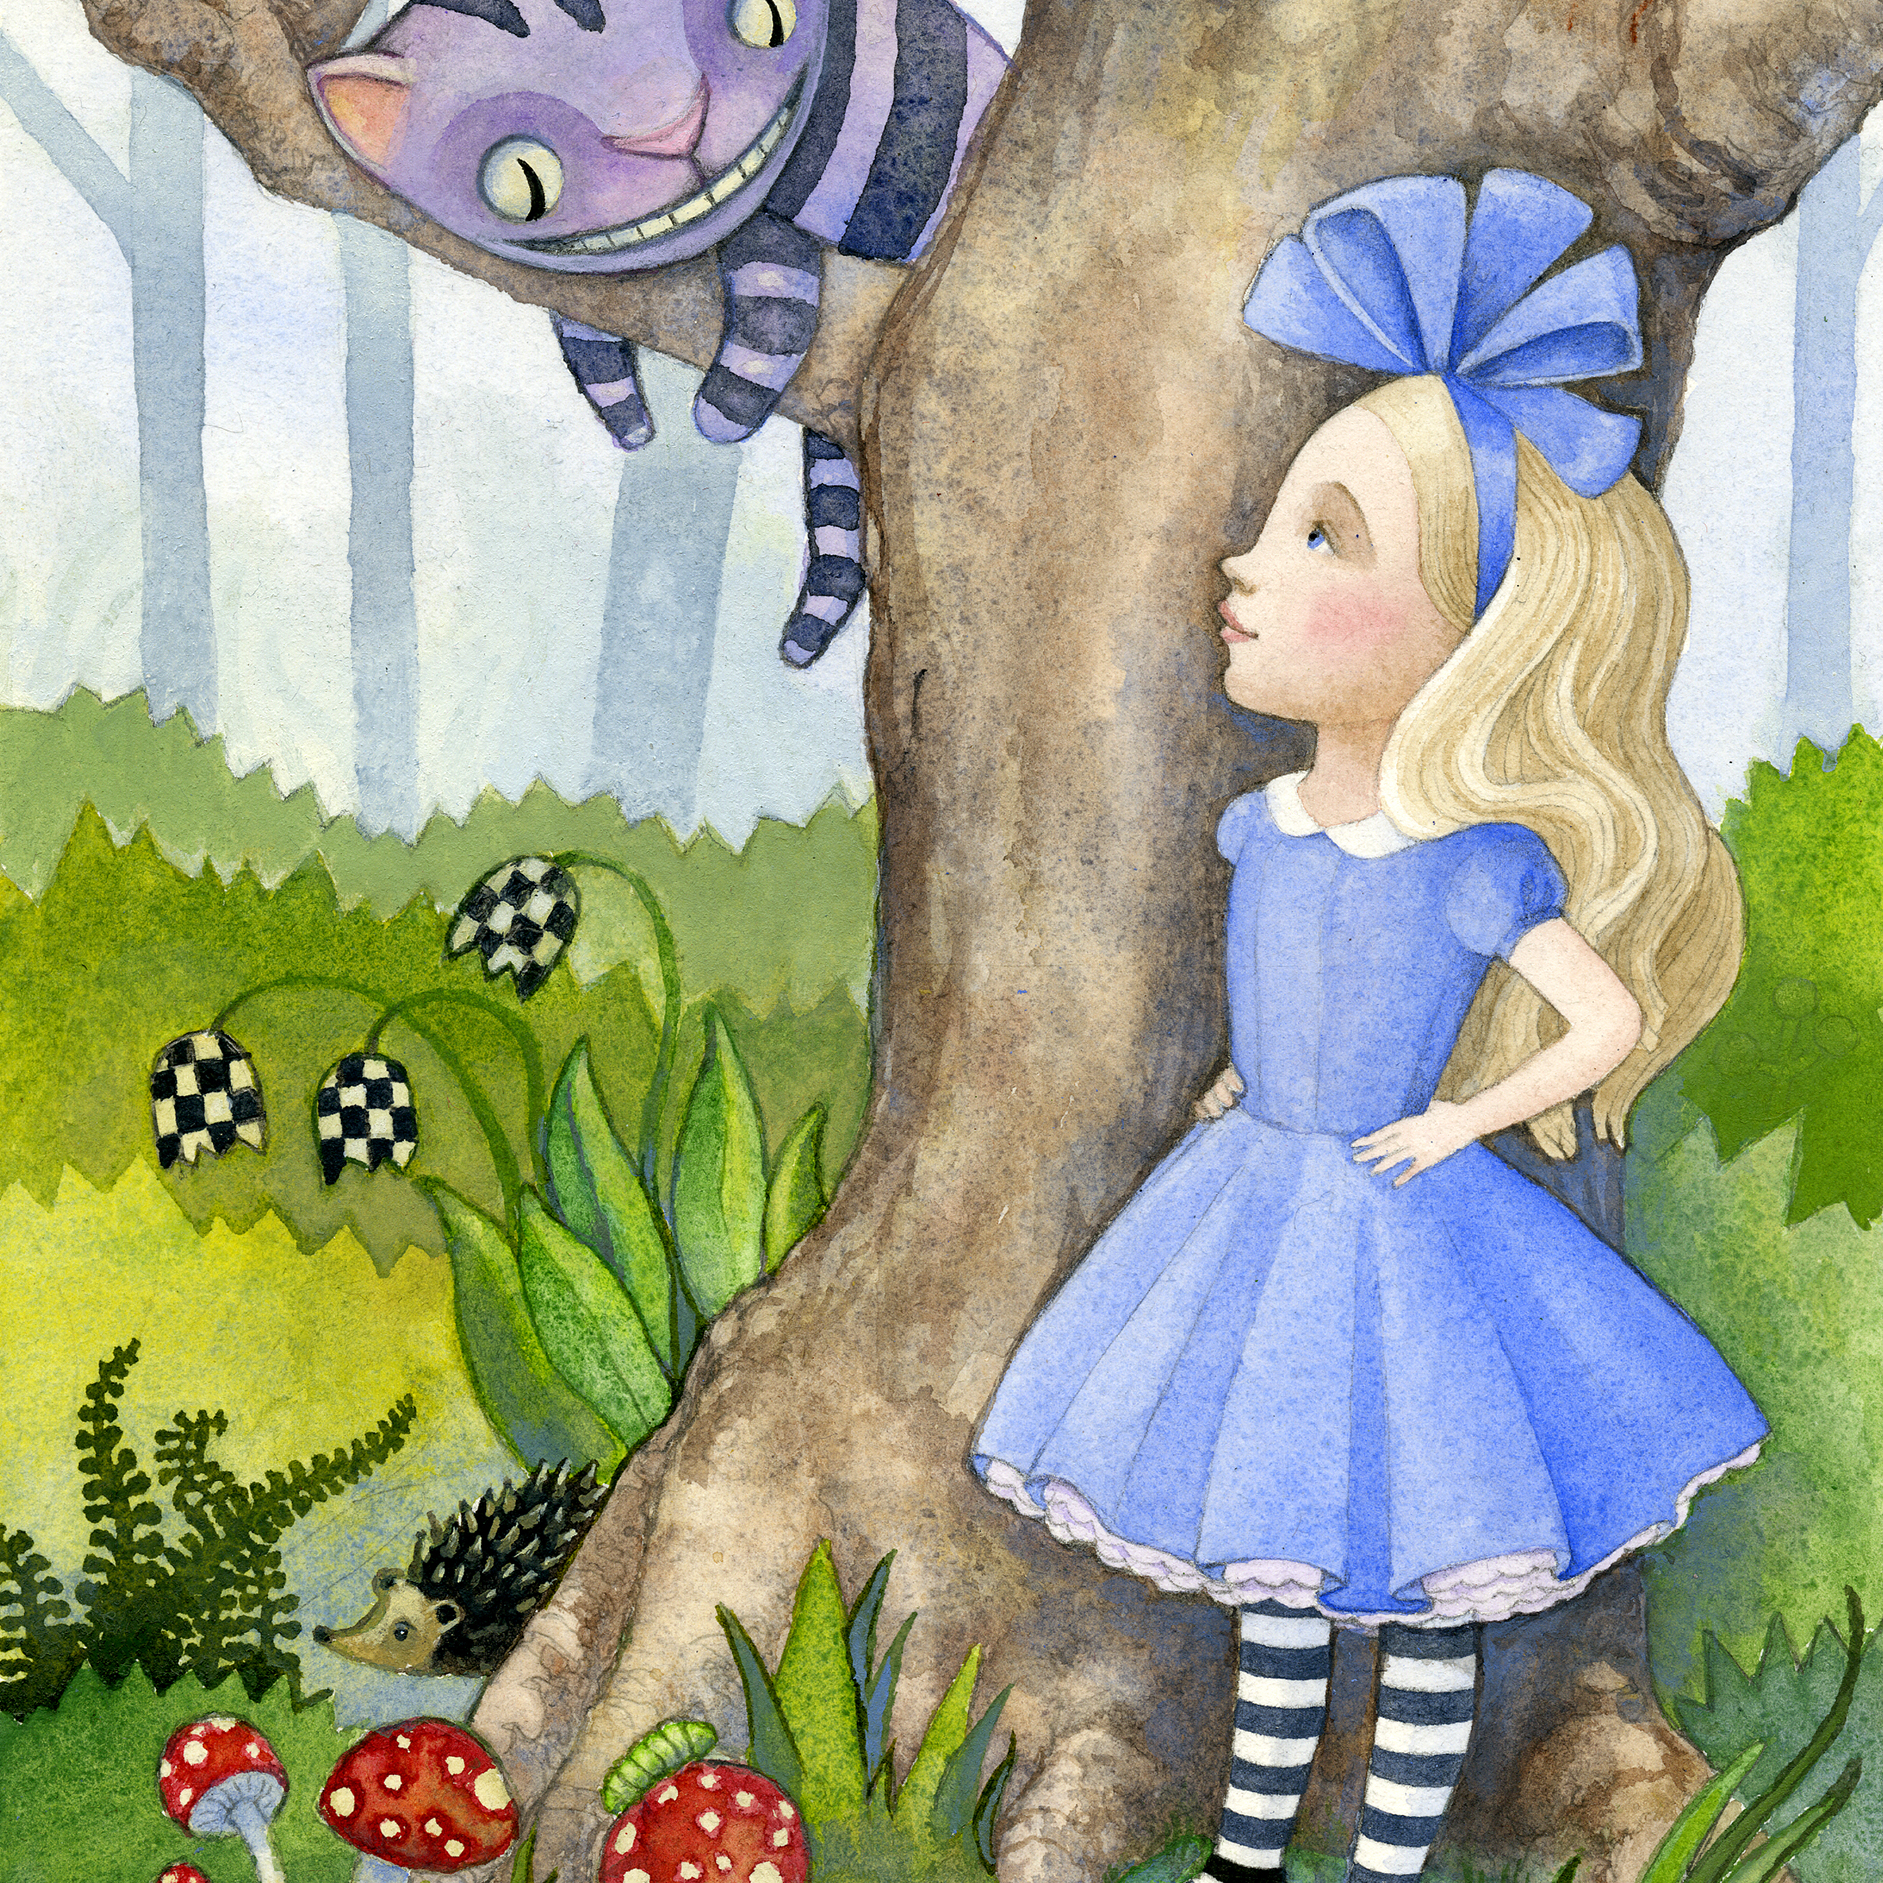 Где сказка алиса в стране чудес. Сказки как Алиса в стране чудес. Иллюстрация к сказке Алиса в стране чудес. Рисунок по книге Алиса в стране чудес. Алиса в стране чудес рисунок.